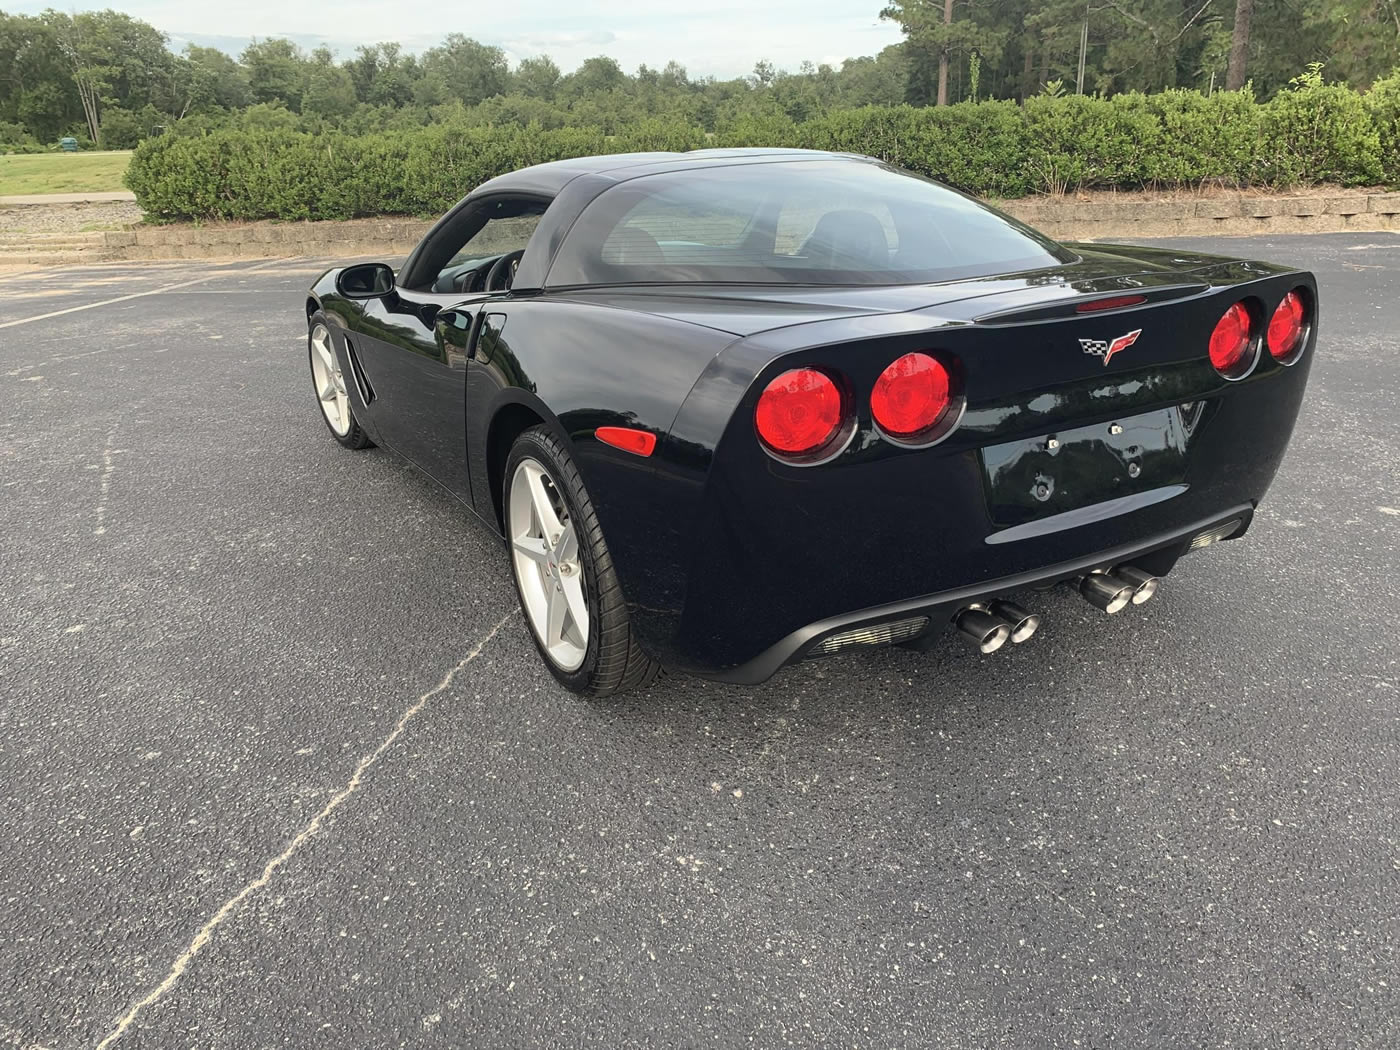 2013 Corvette Coupe in Black